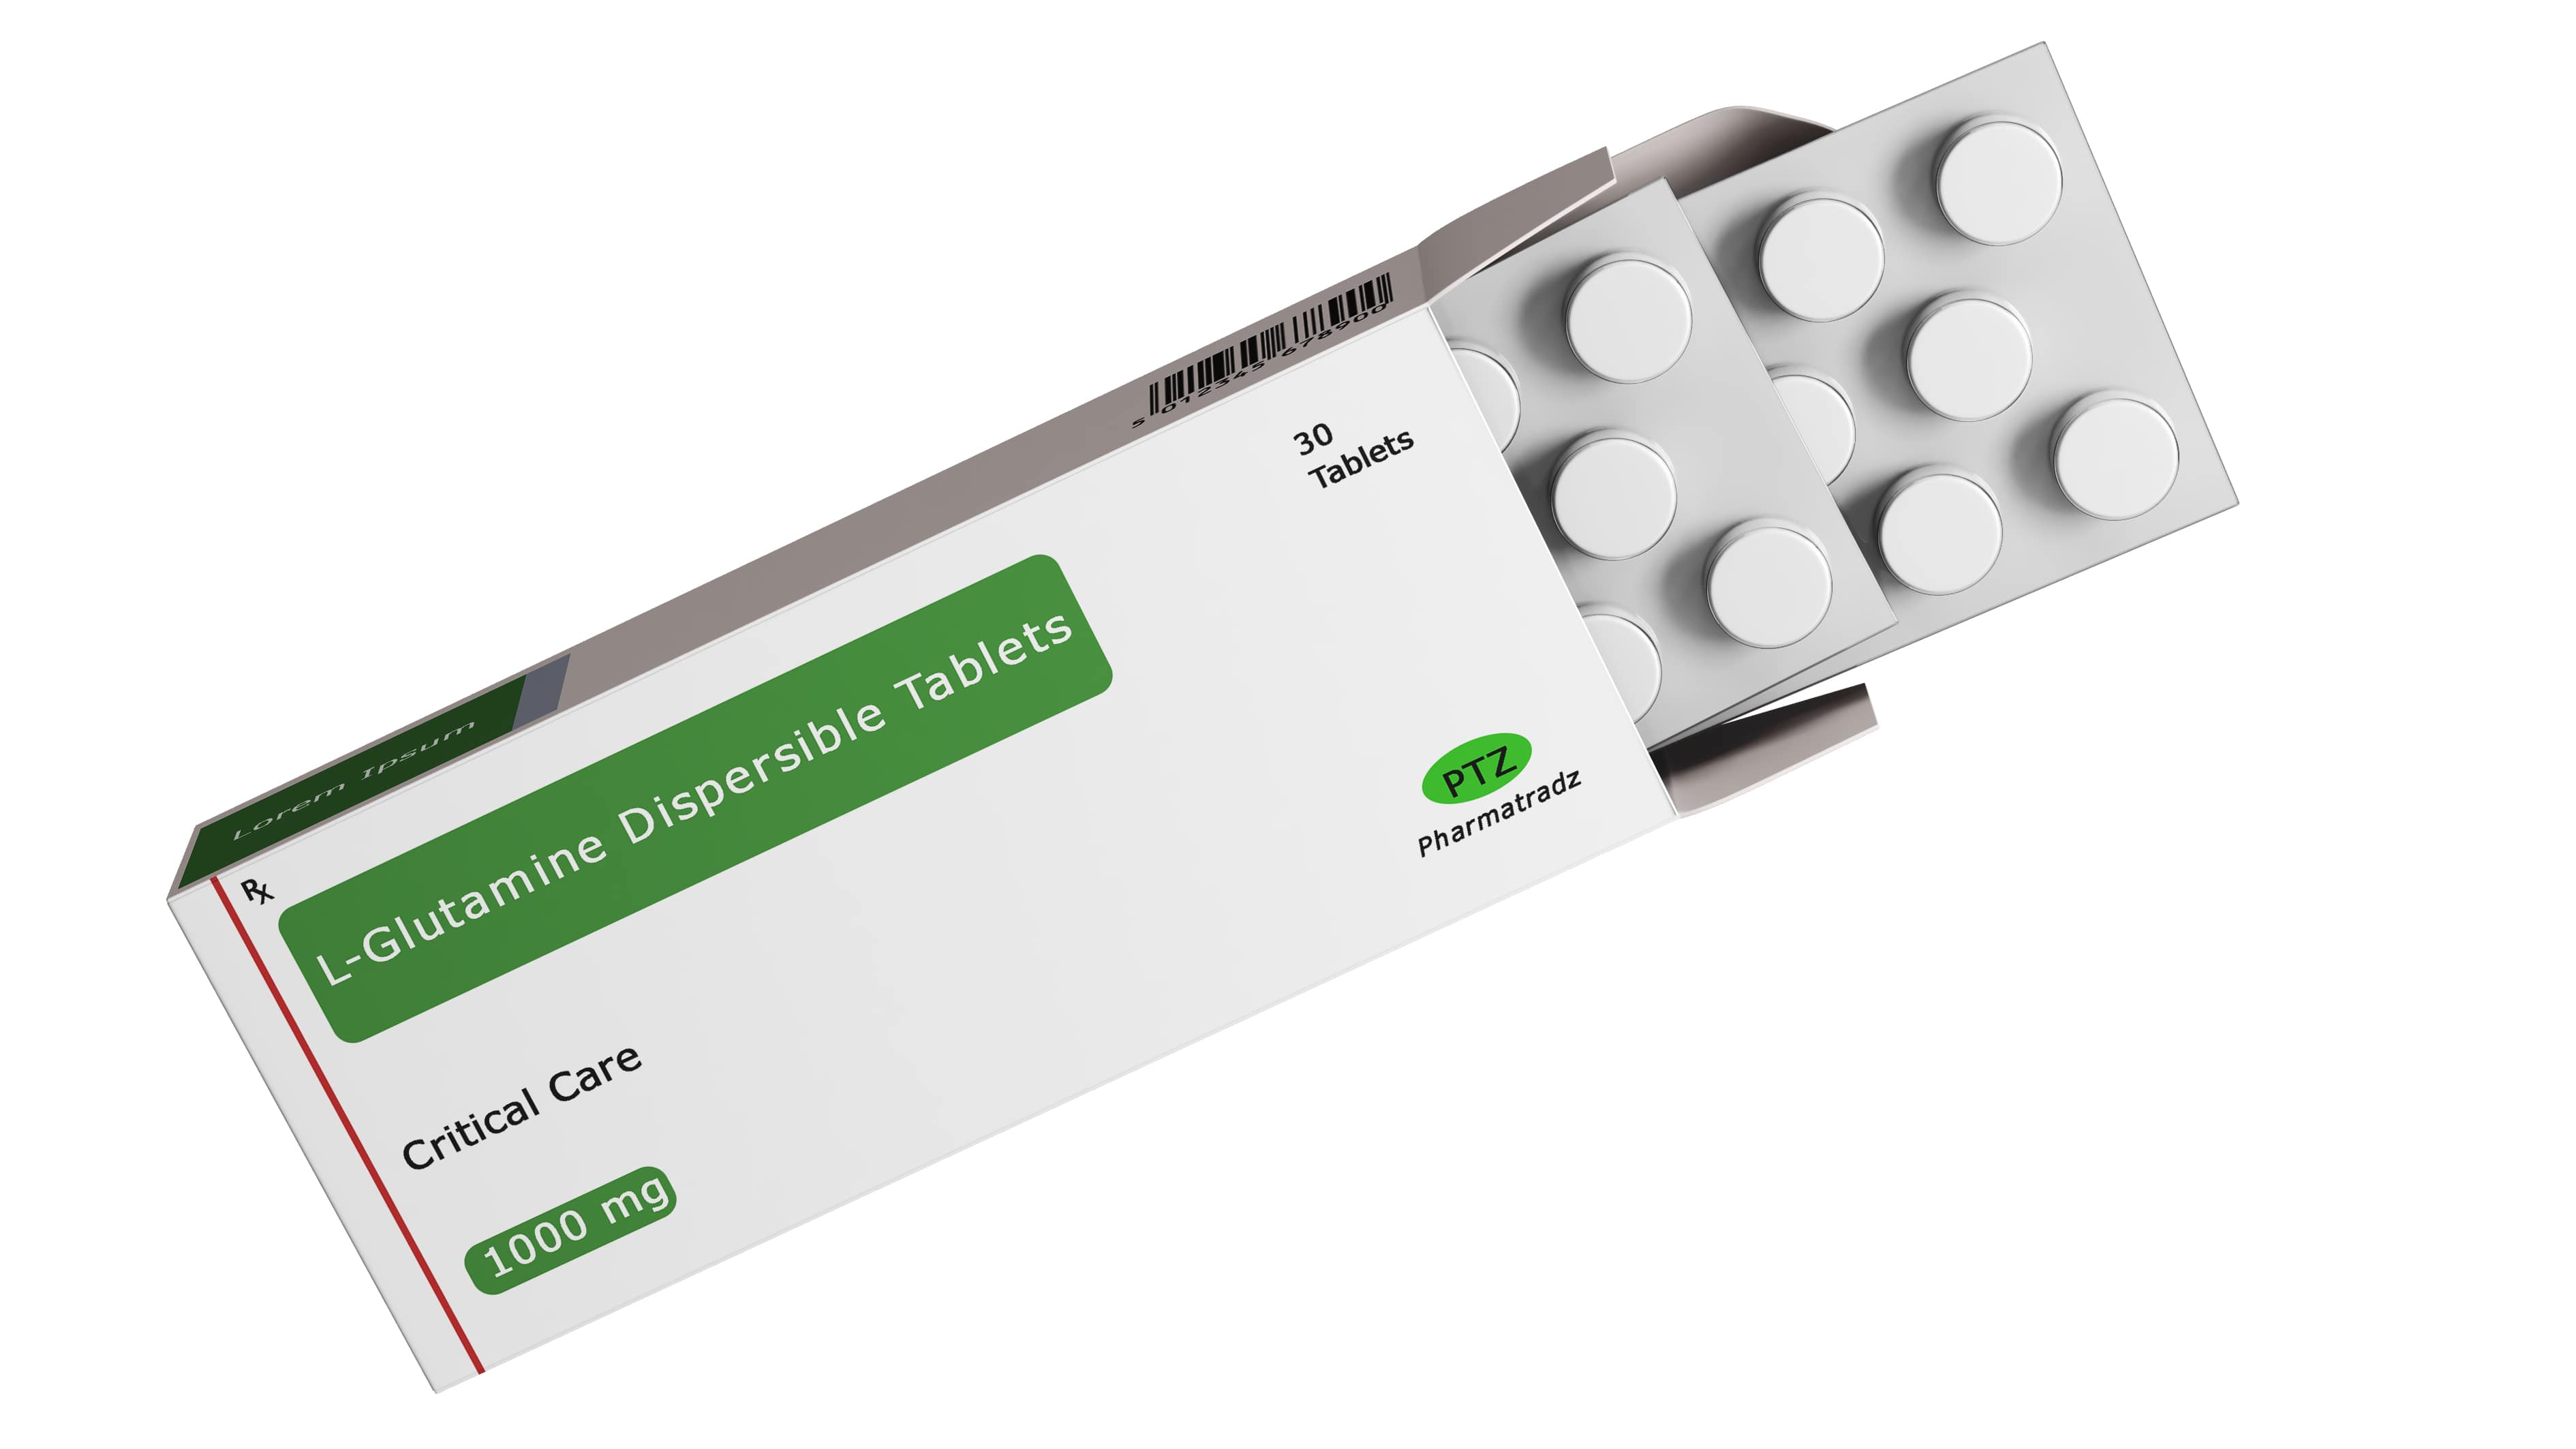 L-Glutamine Dispersible Tablets